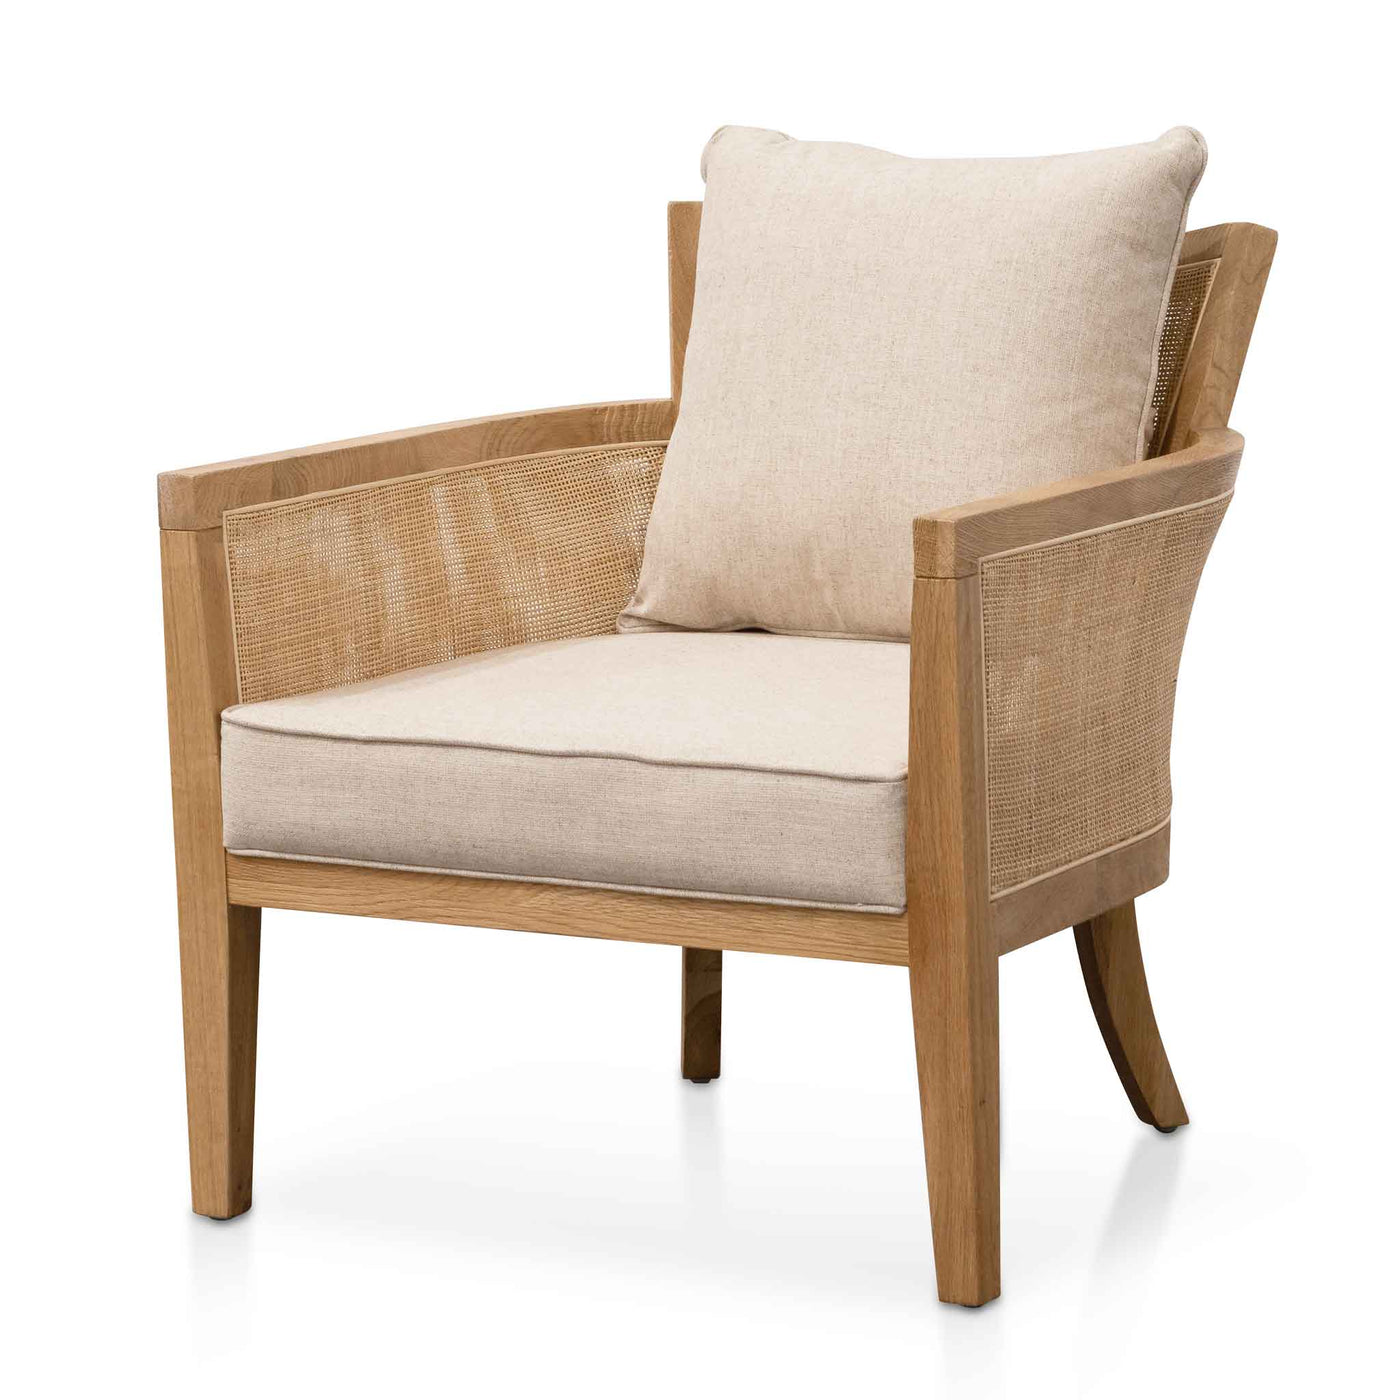 Rattan Sand White Cushions Armchair - Distress Natural